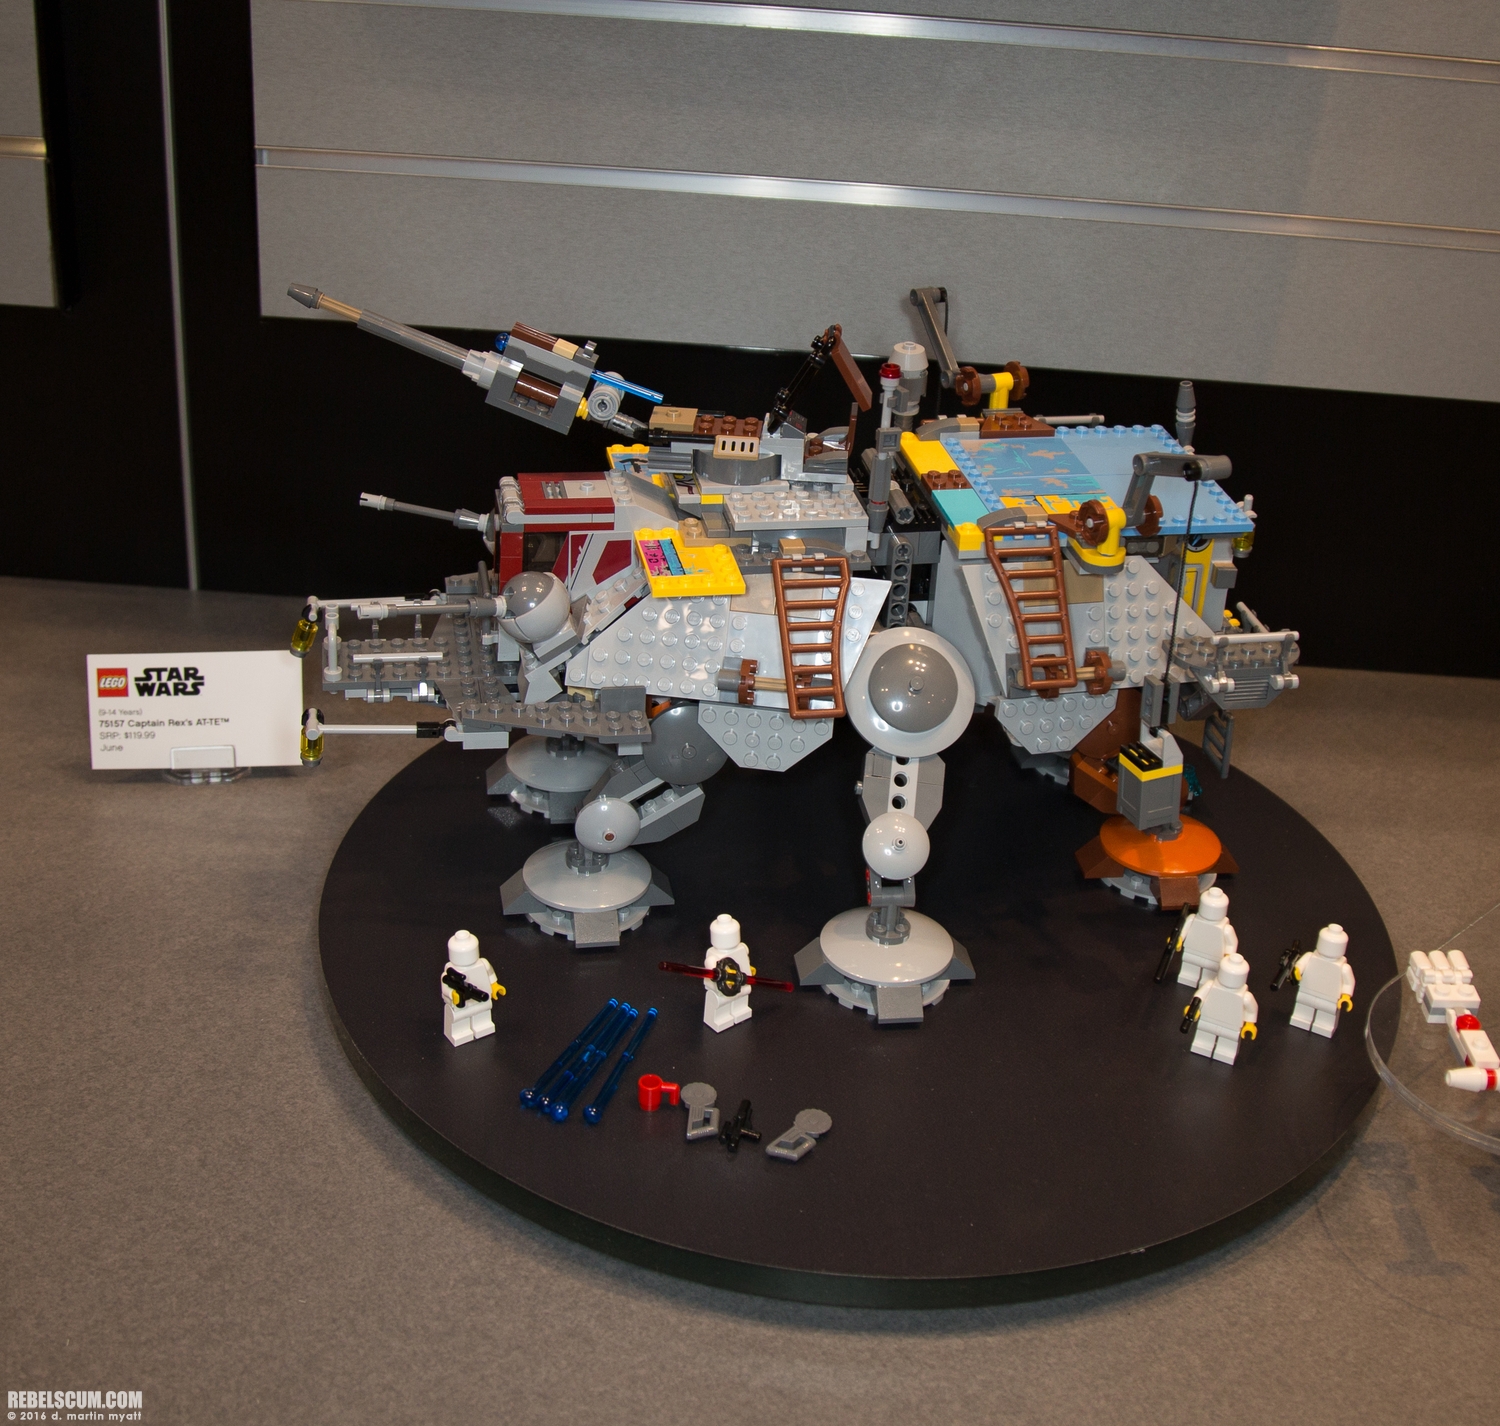 LEGO-2015-International-Toy-Fair-Star-Wars-108.jpg